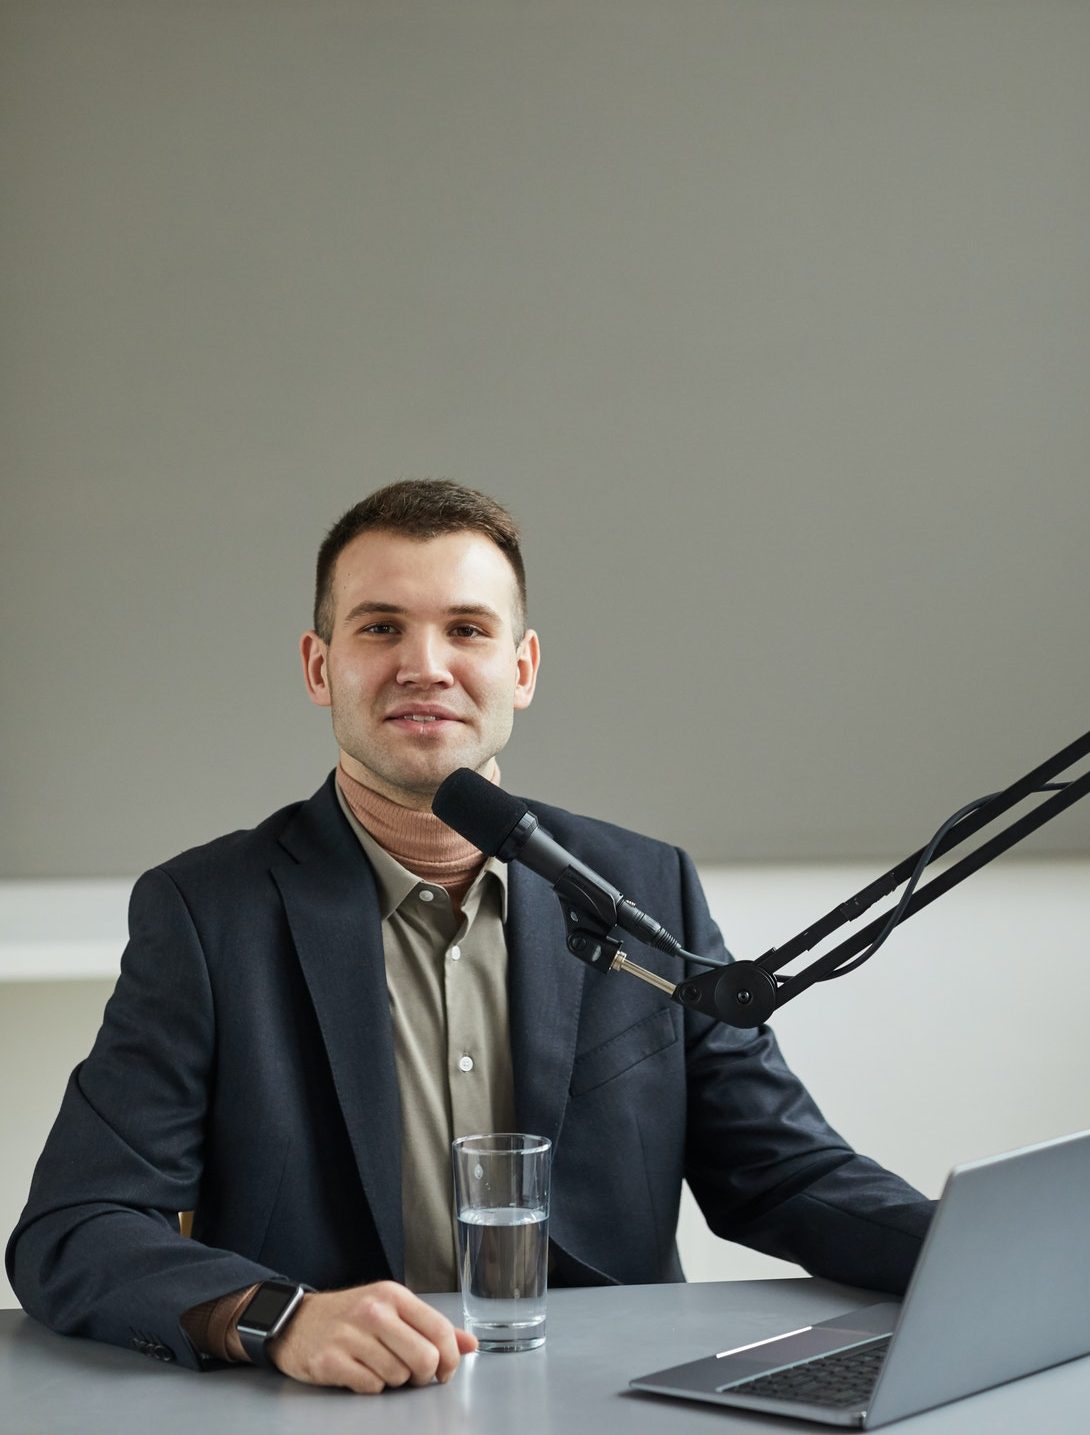 Radio host speaking on the radio